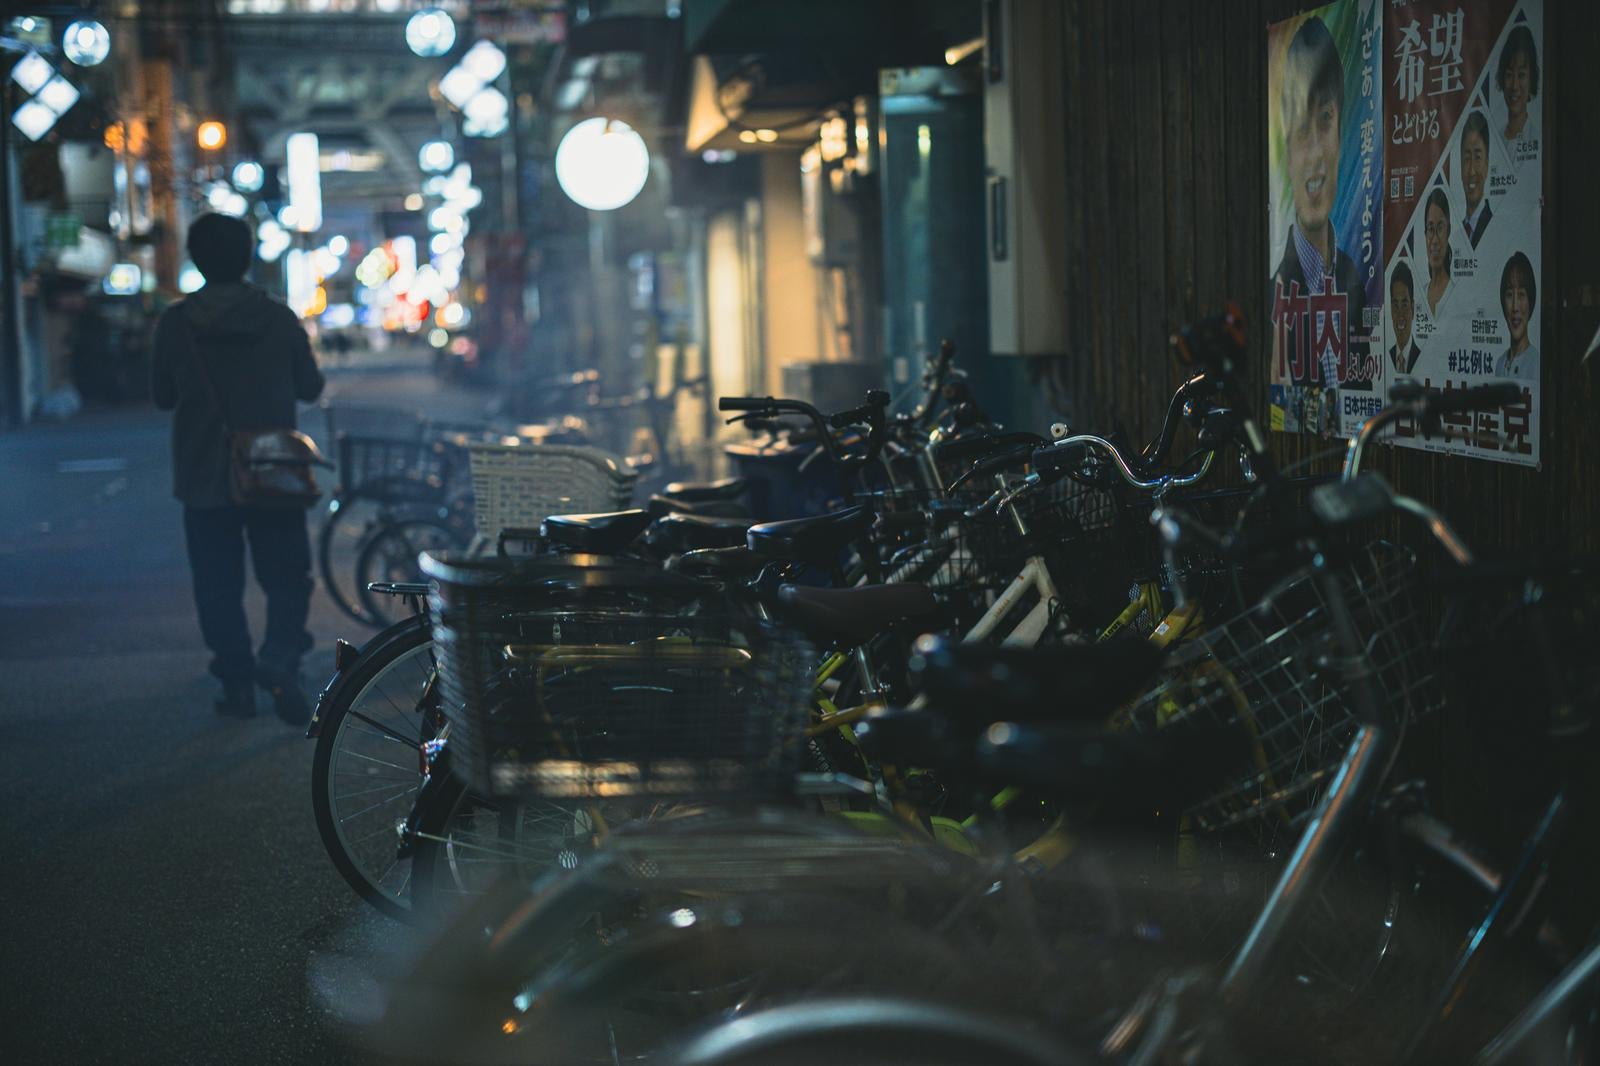 「夜の飲み屋街と駐輪」の写真